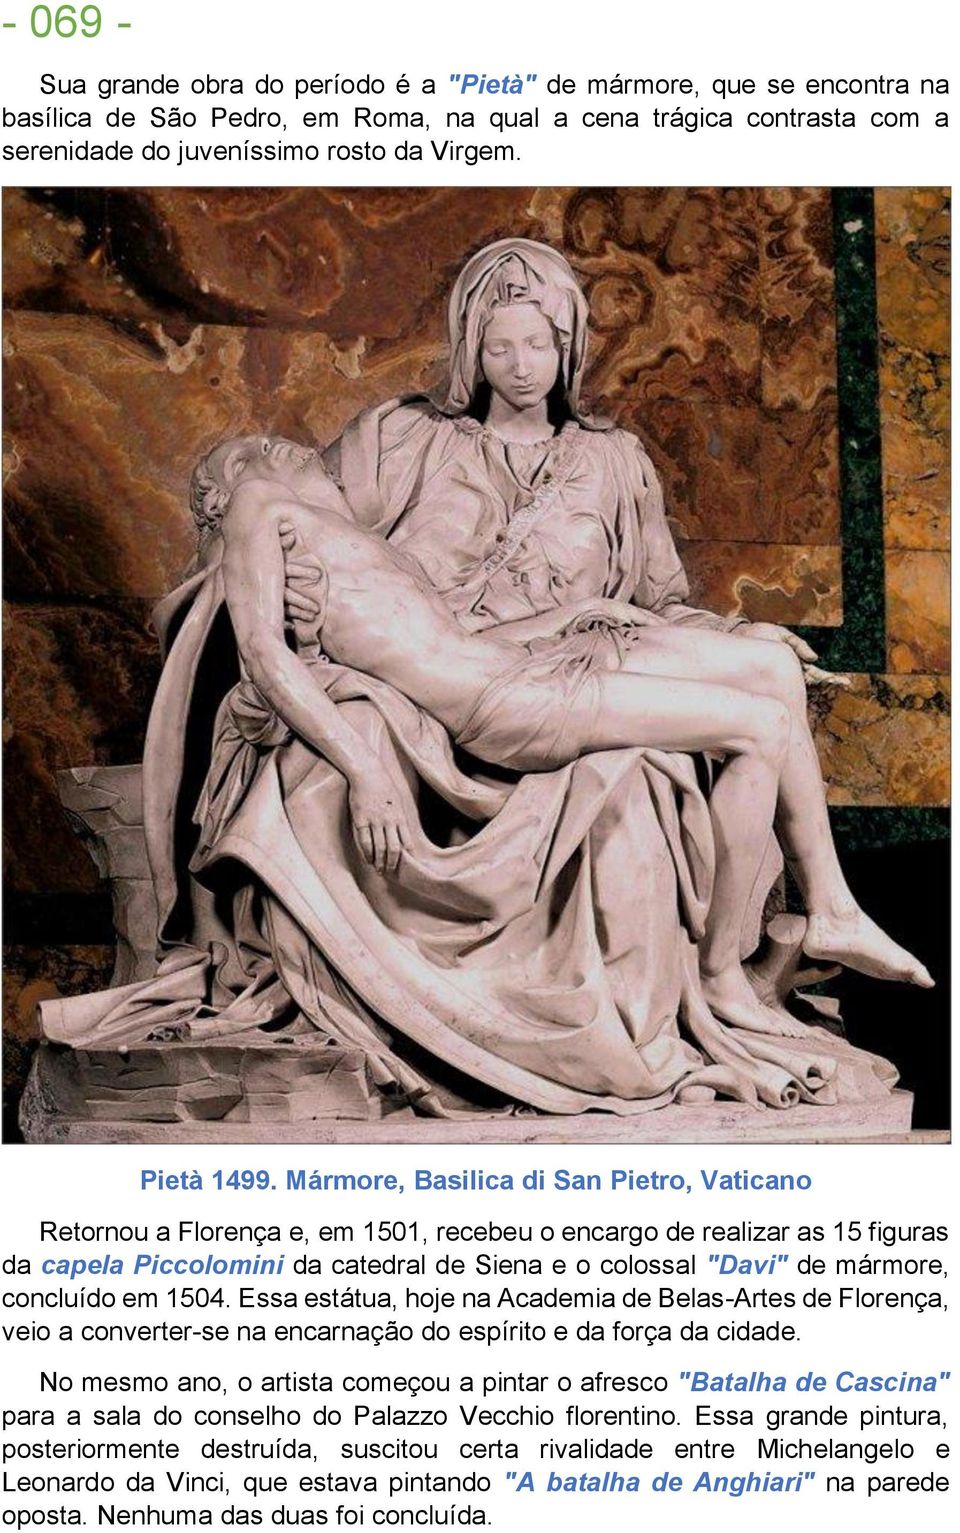 Mármore, Basilica di San Pietro, Vaticano Retornou a Florença e, em 1501, recebeu o encargo de realizar as 15 figuras da capela Piccolomini da catedral de Siena e o colossal "Davi" de mármore,